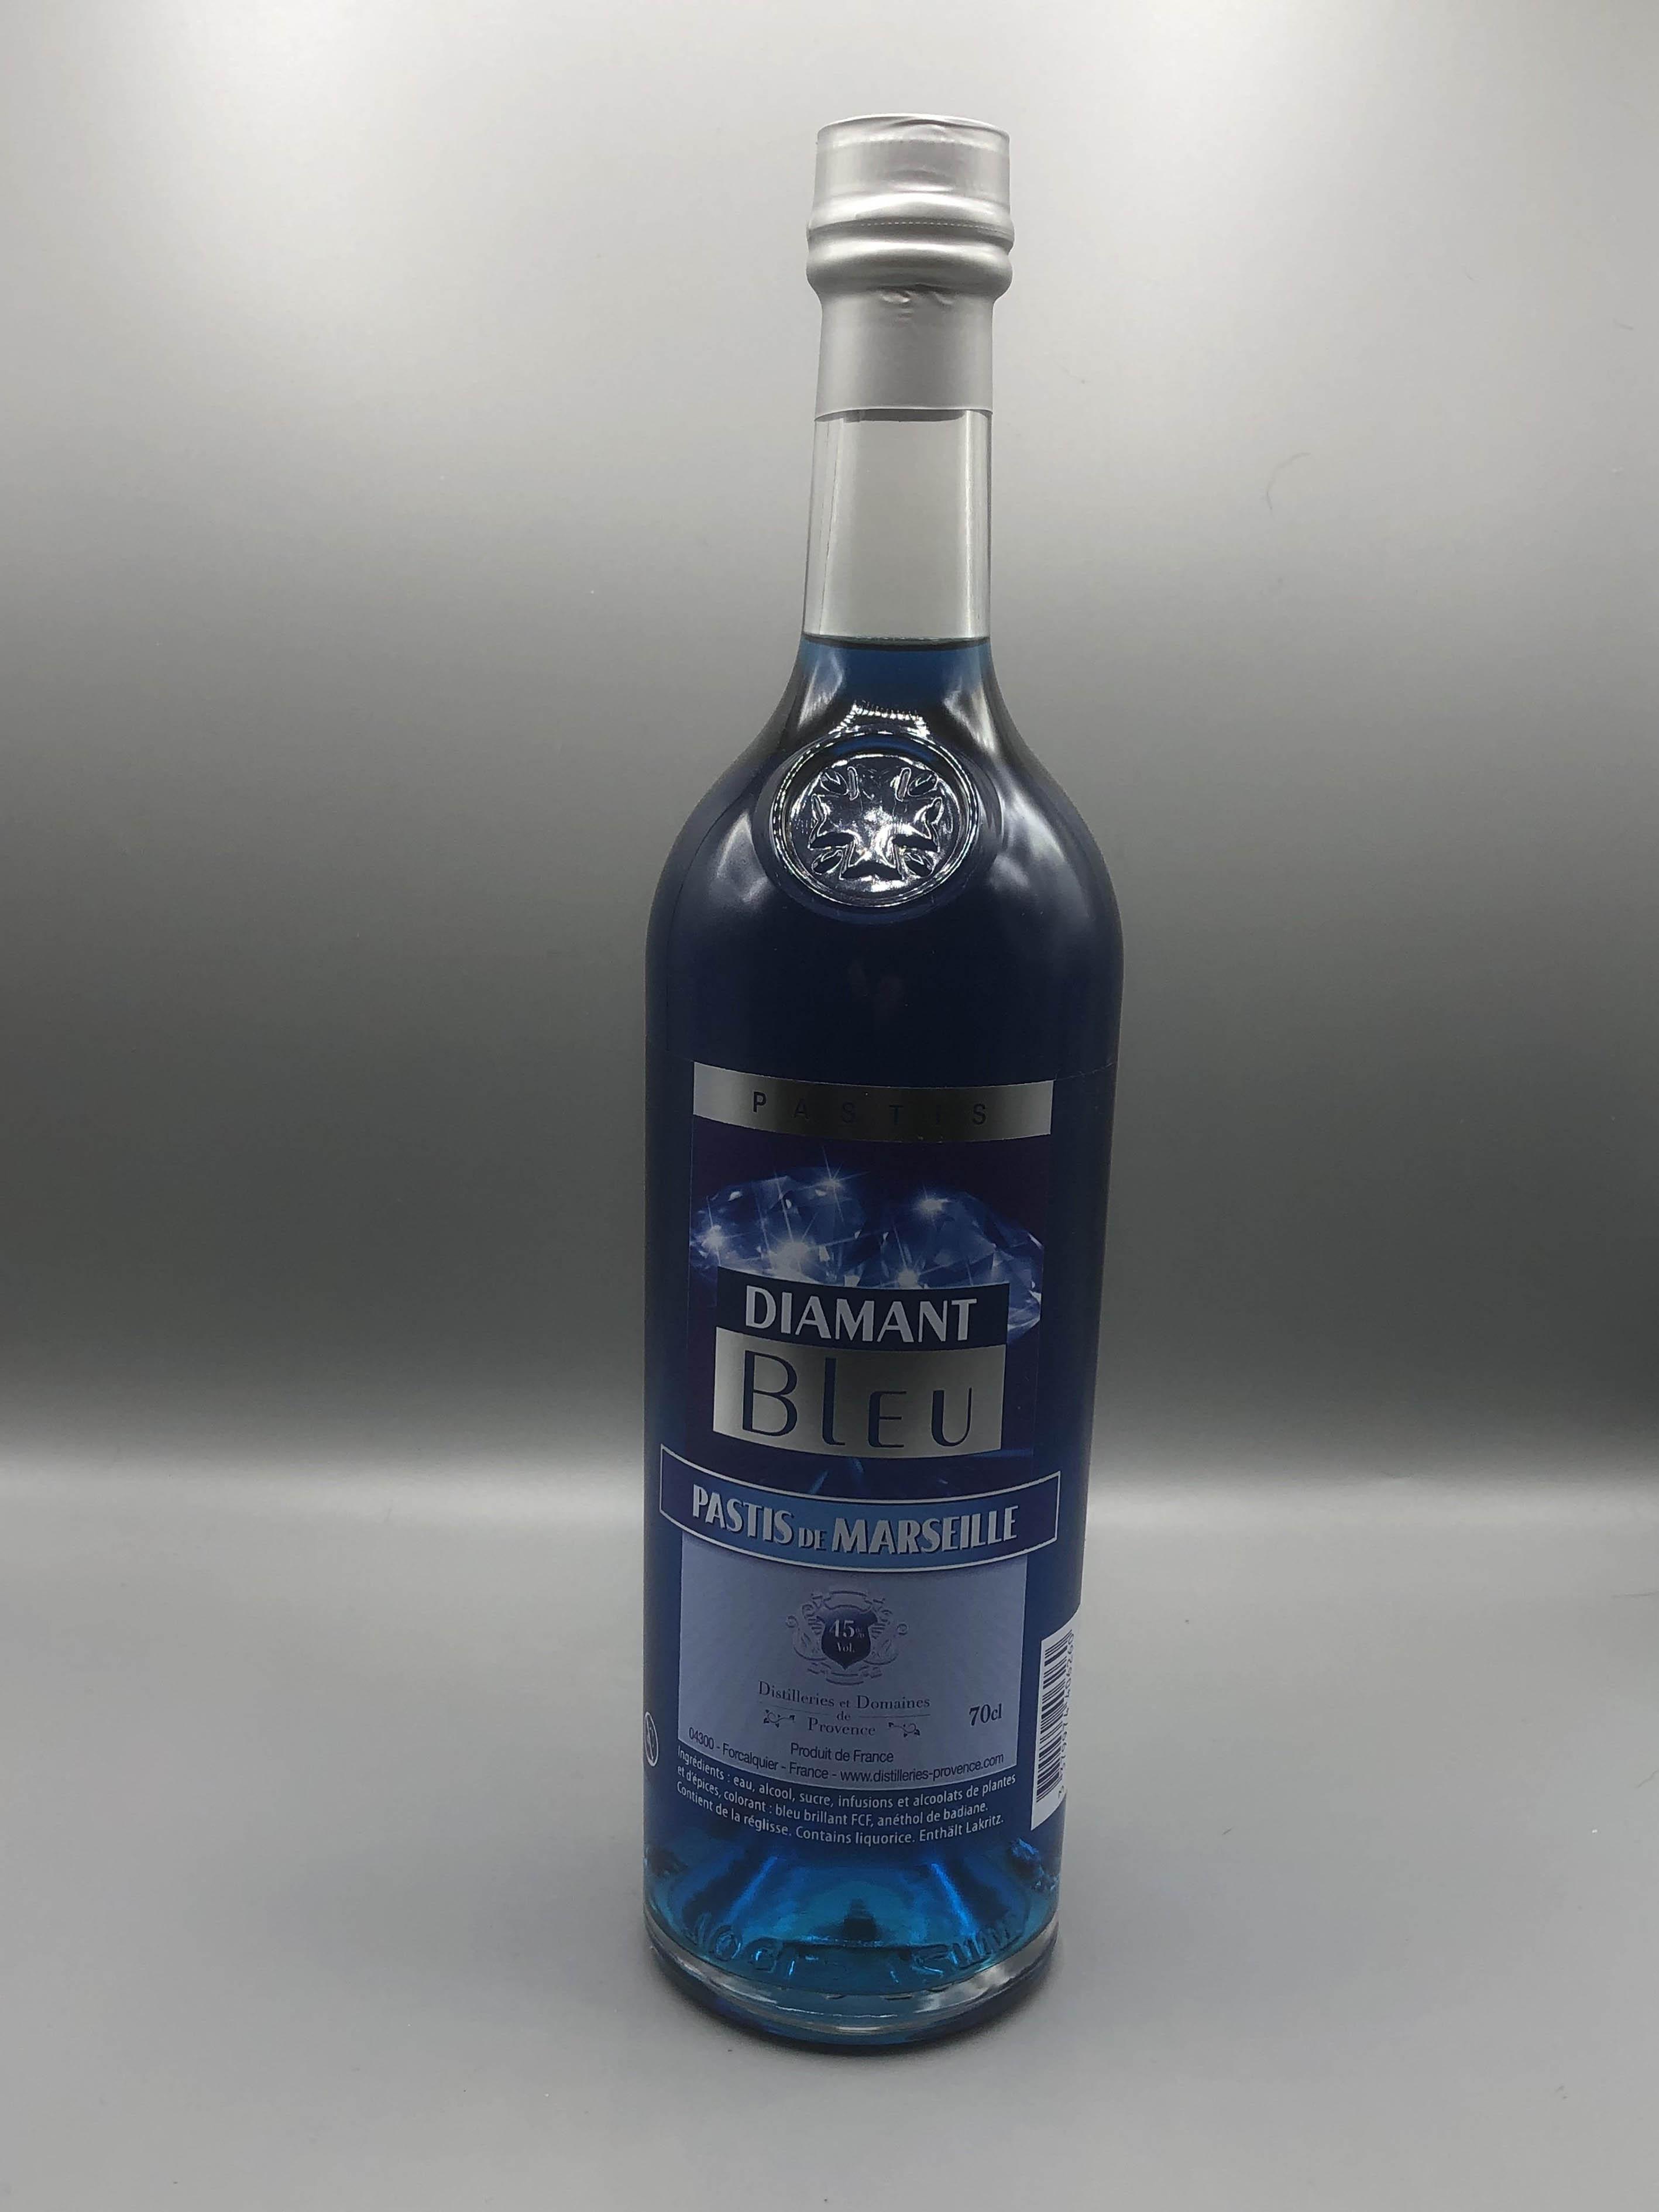 Le pastis bleu et son acolyte plus classique - Picture of Le Grand Bleu,  Cassis - Tripadvisor